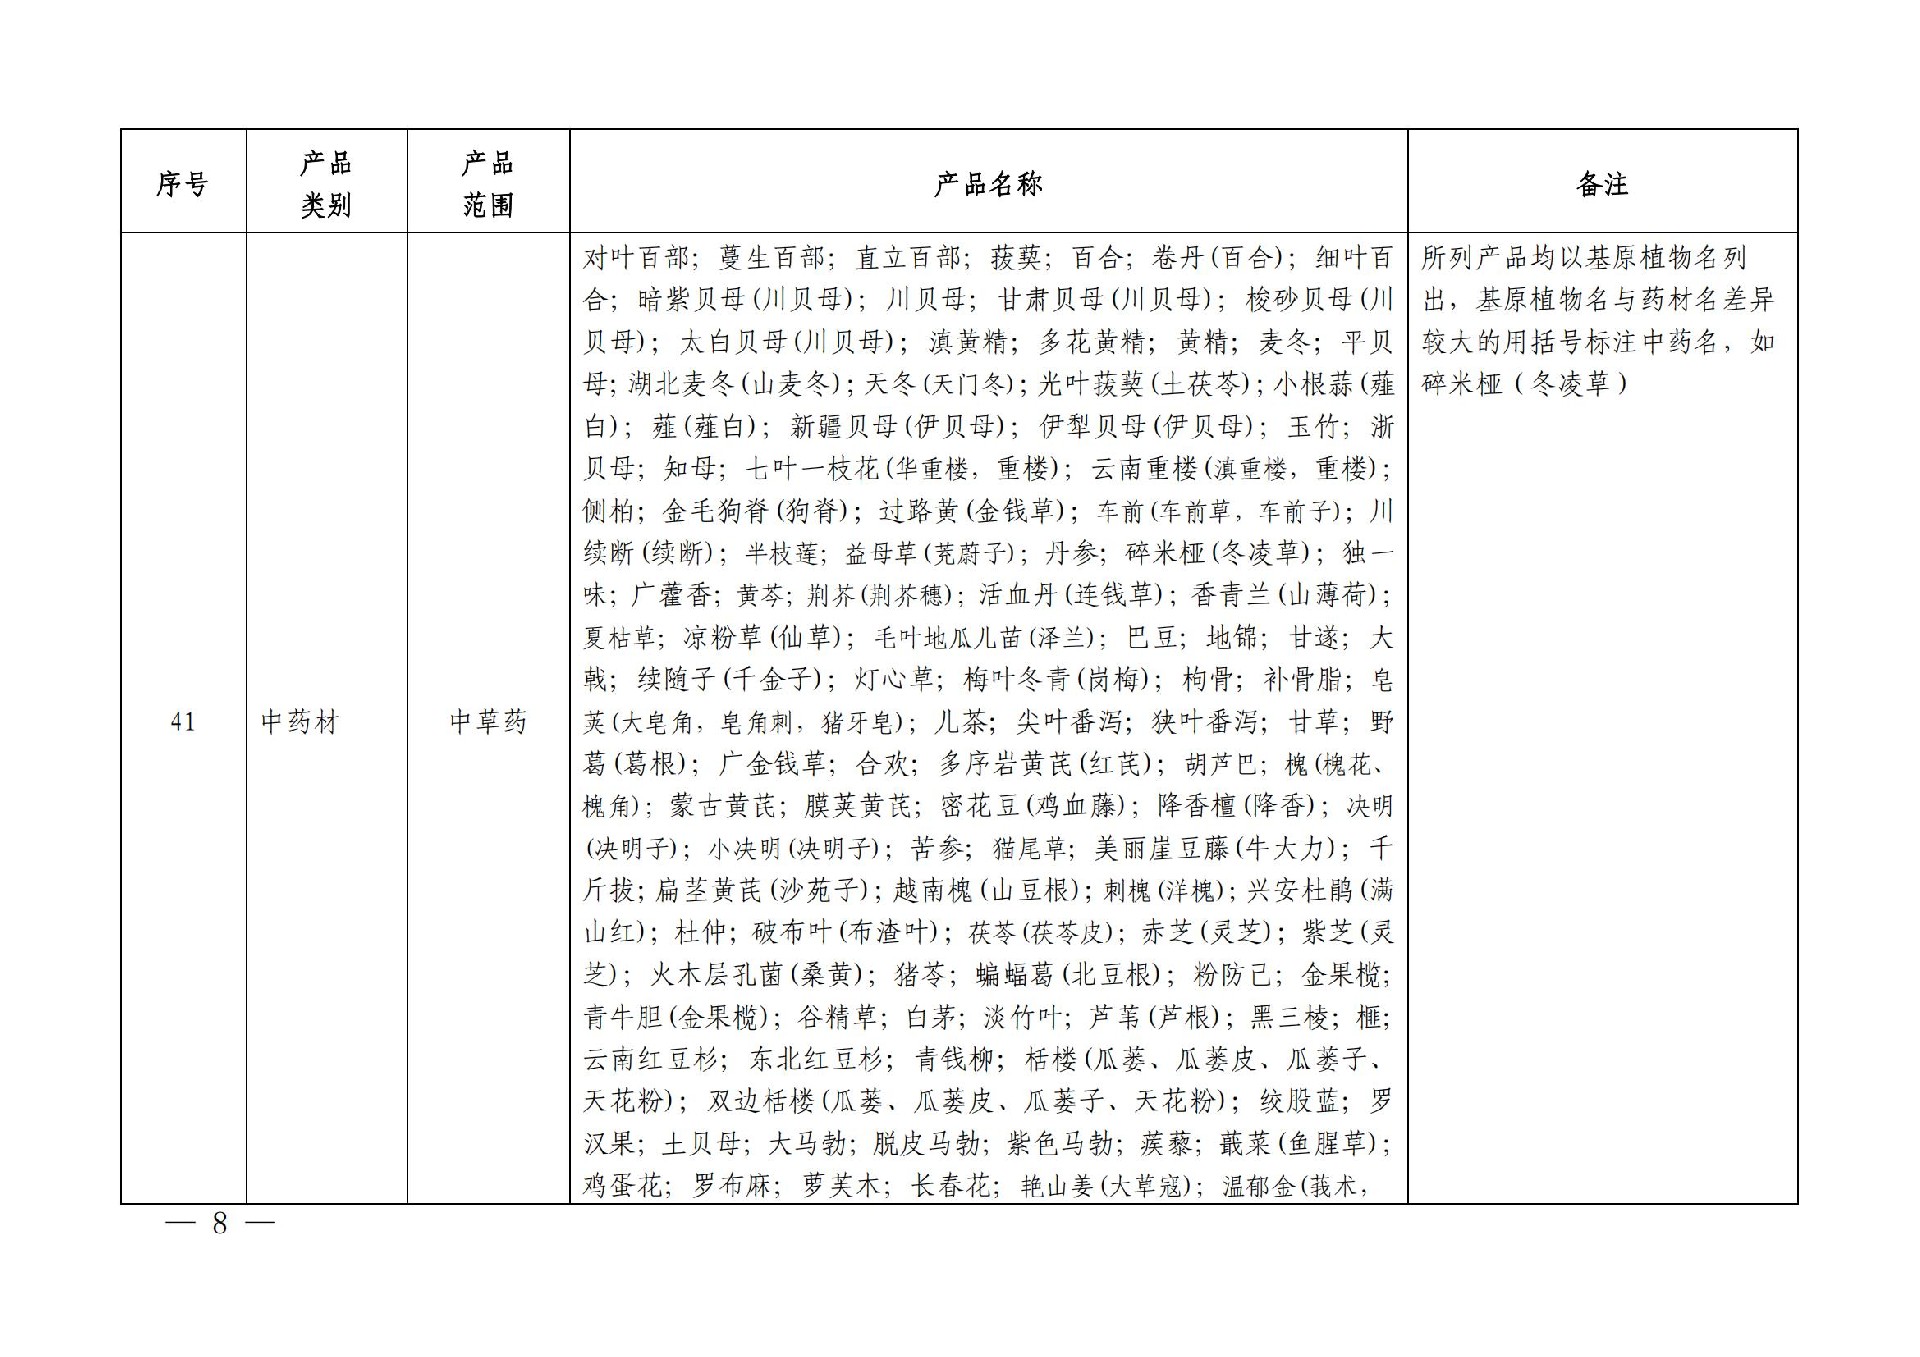 有机产品认证目录【认监委2019年第22号公告】(1)_07.jpg